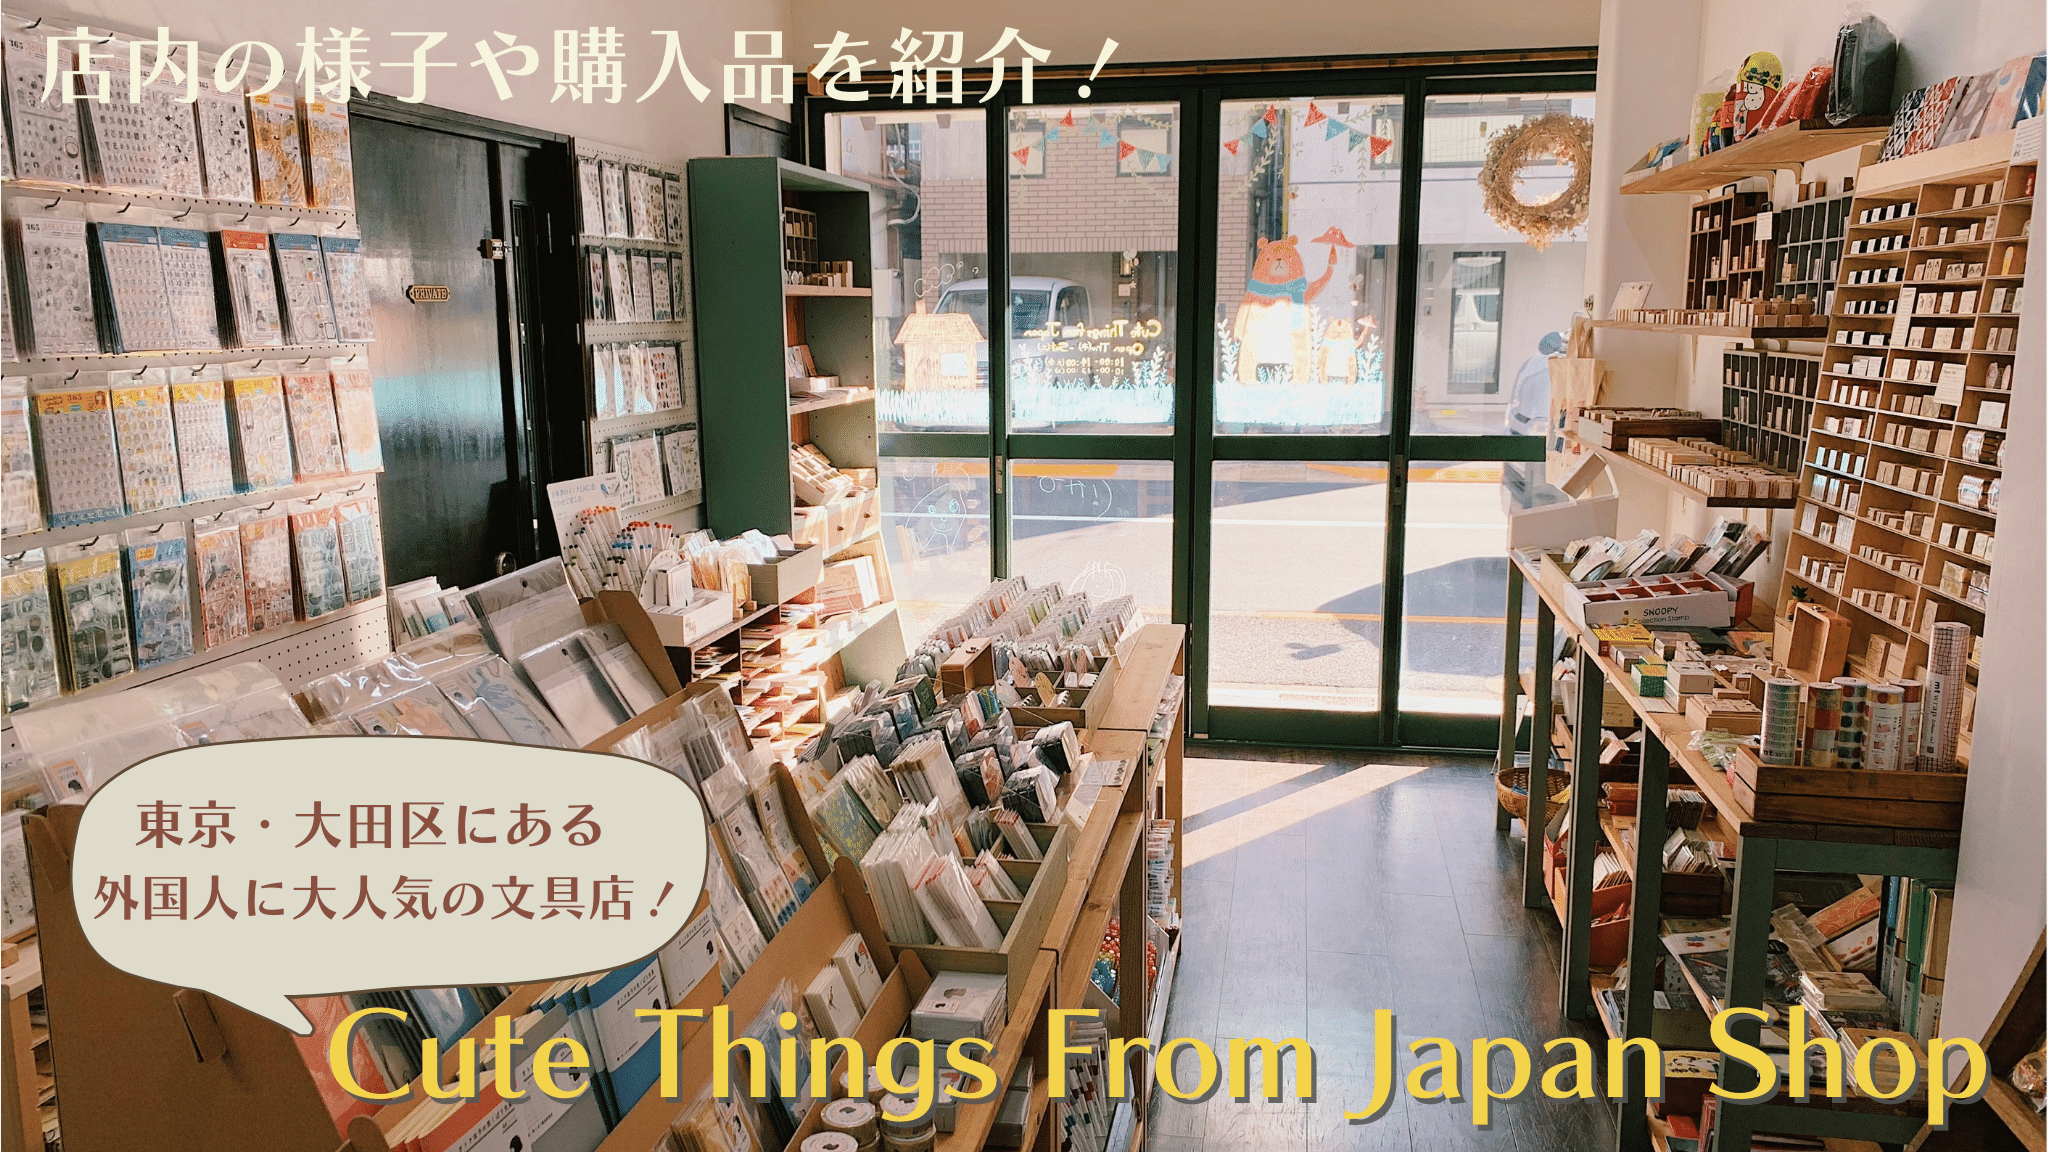 東京・大田区の文房具店・Cute things from Japan の店舗をご紹介